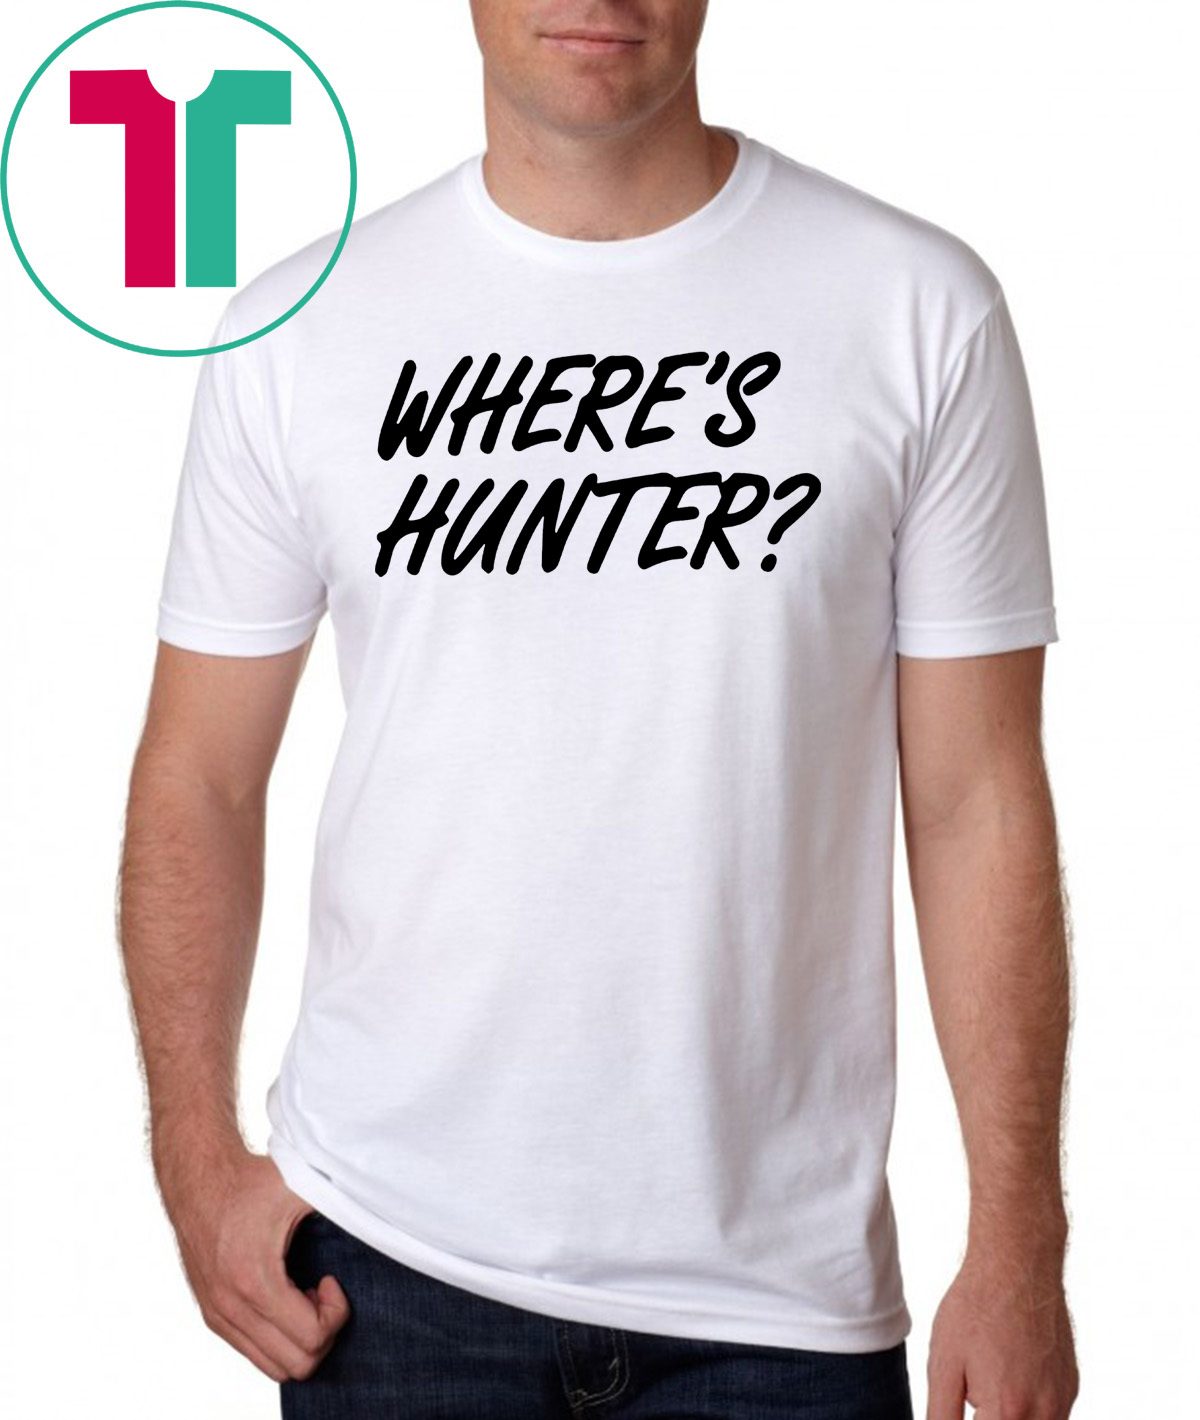 Let’s do another t-shirt Where’s Hunter Biden 2020 Tee Shirt ...